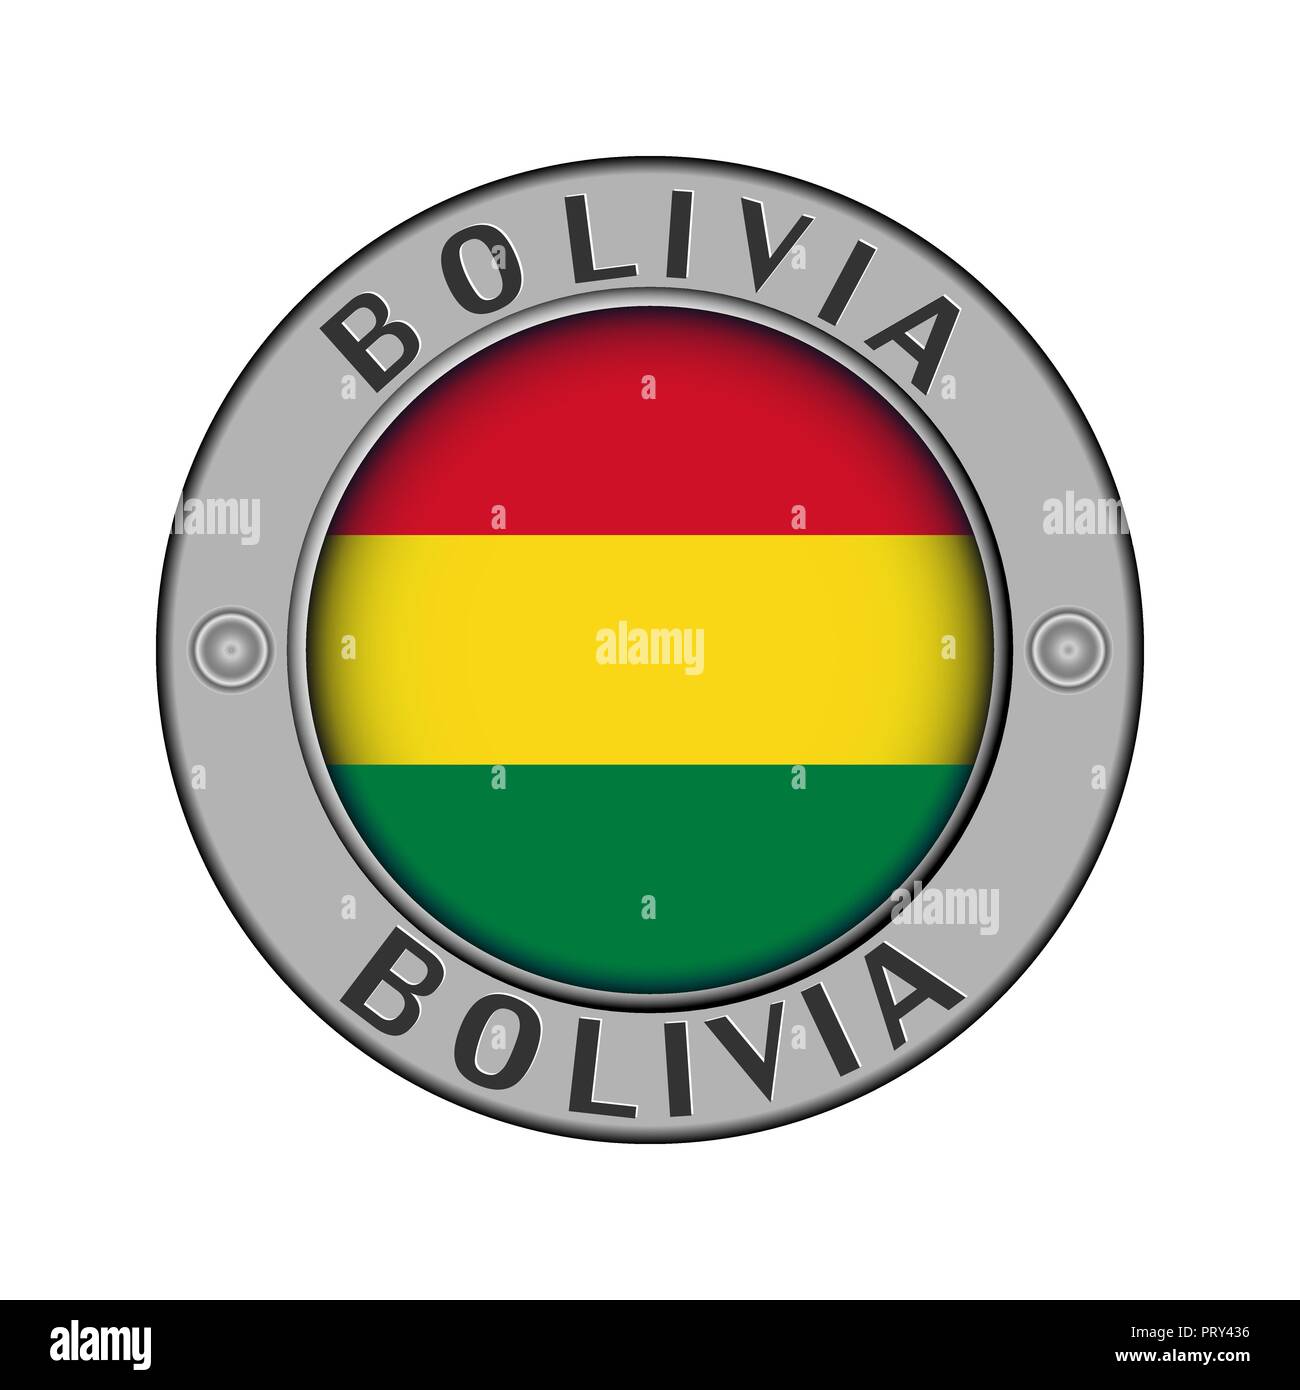 Rotondo di metallo medaglione con il nome del paese di Bolivia e un indicatore rotondo nel centro Illustrazione Vettoriale